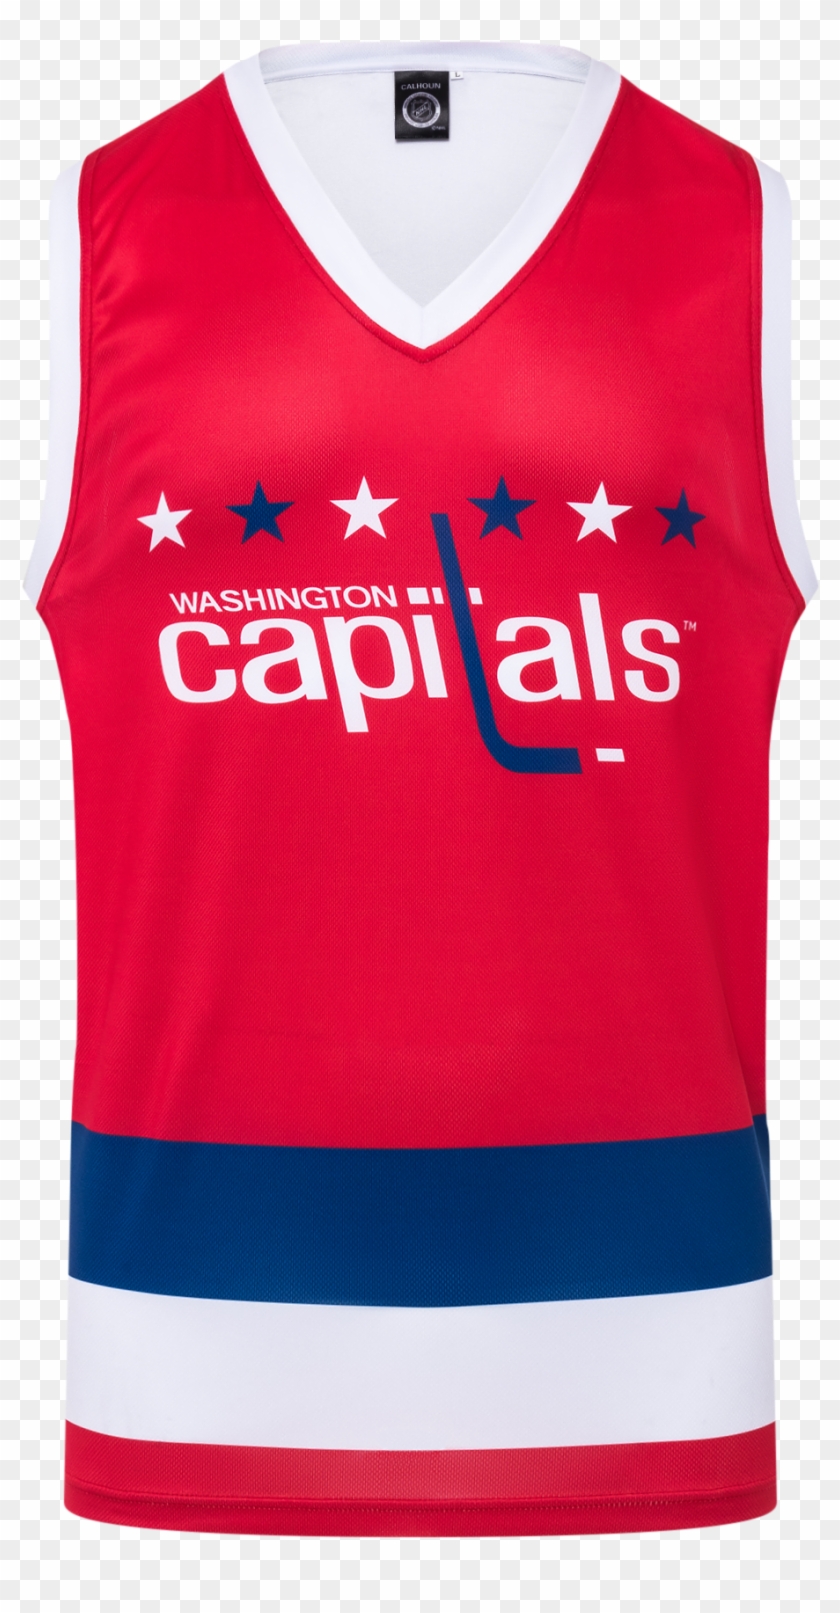 Washington Capitals Alt Hockey Tank - Washington Capitals Clipart #3045717